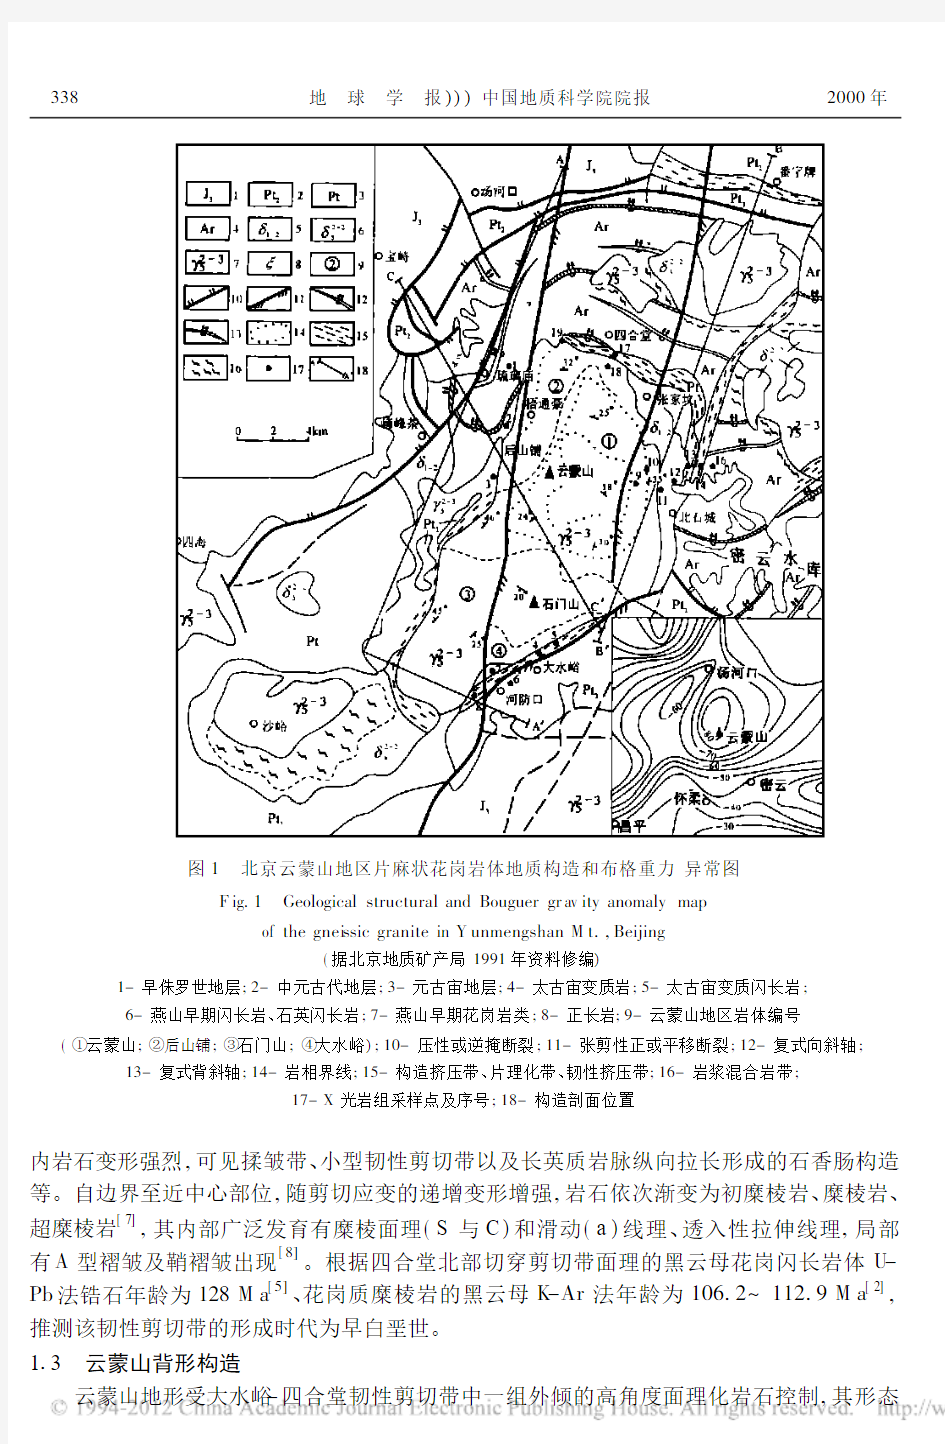 北京云蒙山地区挤压_伸展体系构造特征及其岩石组构的动力学分析